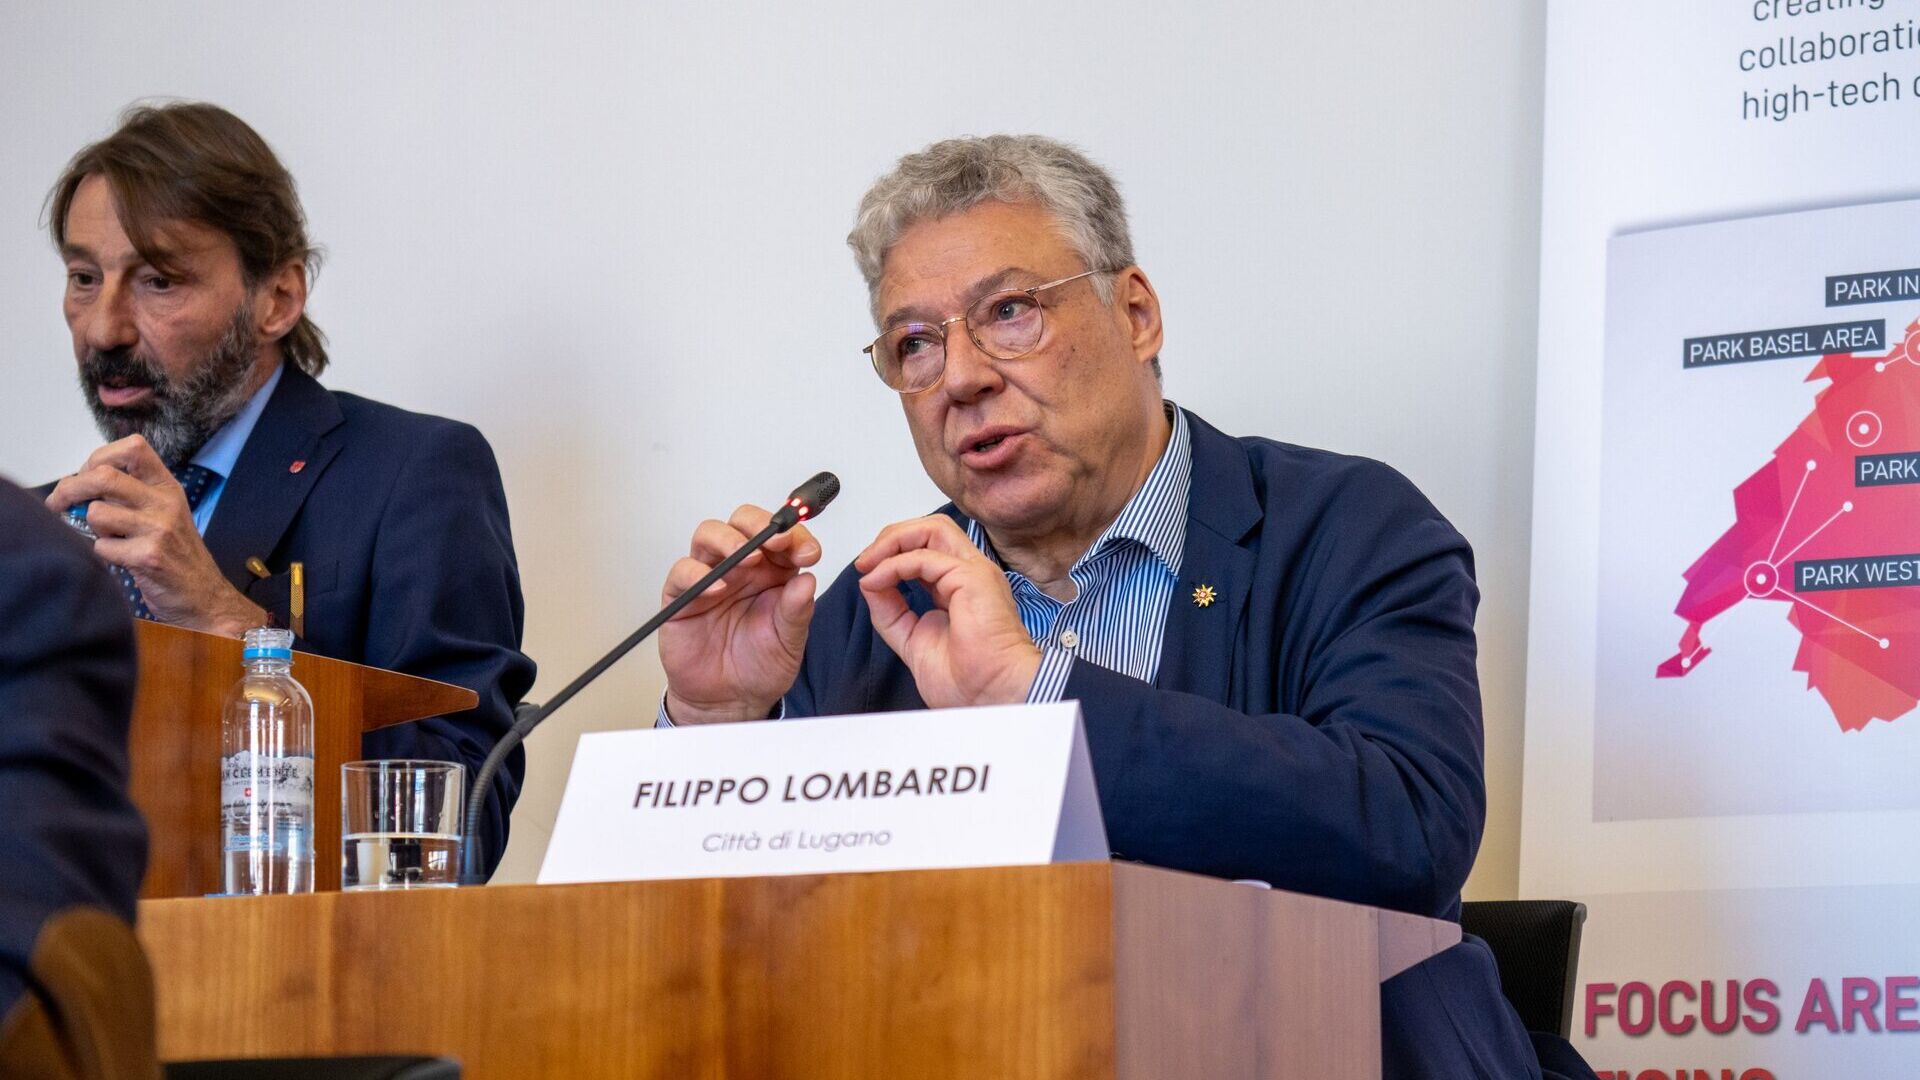 LTCC: Filippo Lombardi je mestni svetnik in vodja oddelka za teritorialni razvoj mesta Lugano